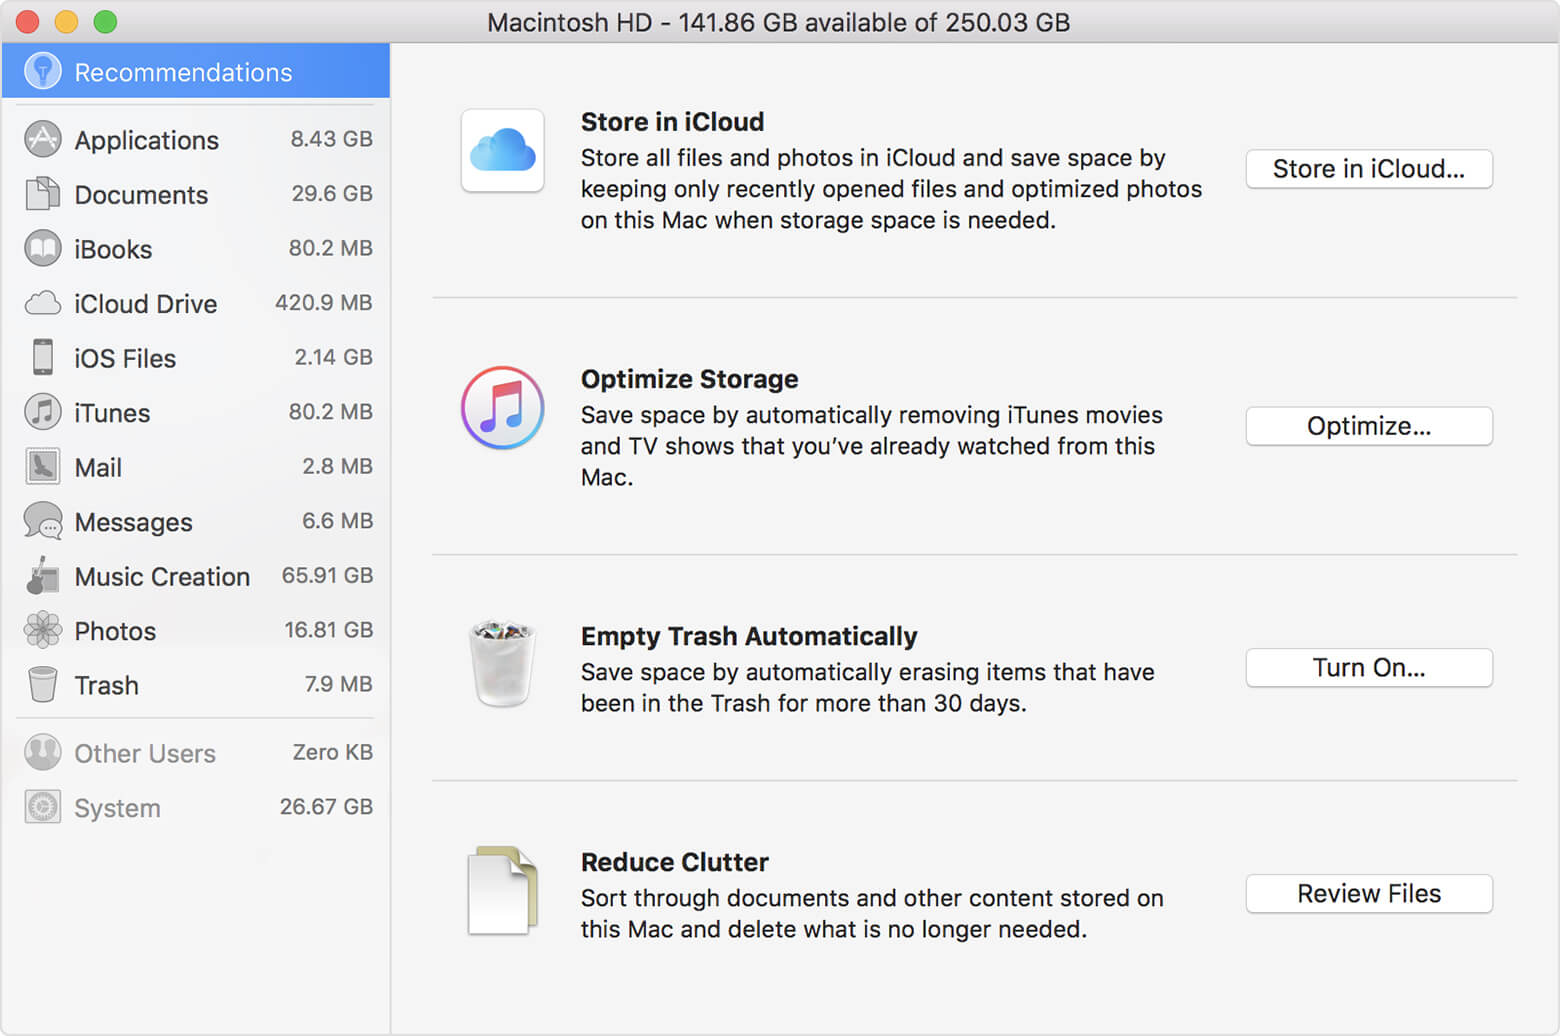 Localize arquivos grandes no Mac, revisando arquivos em Reduce Clutter